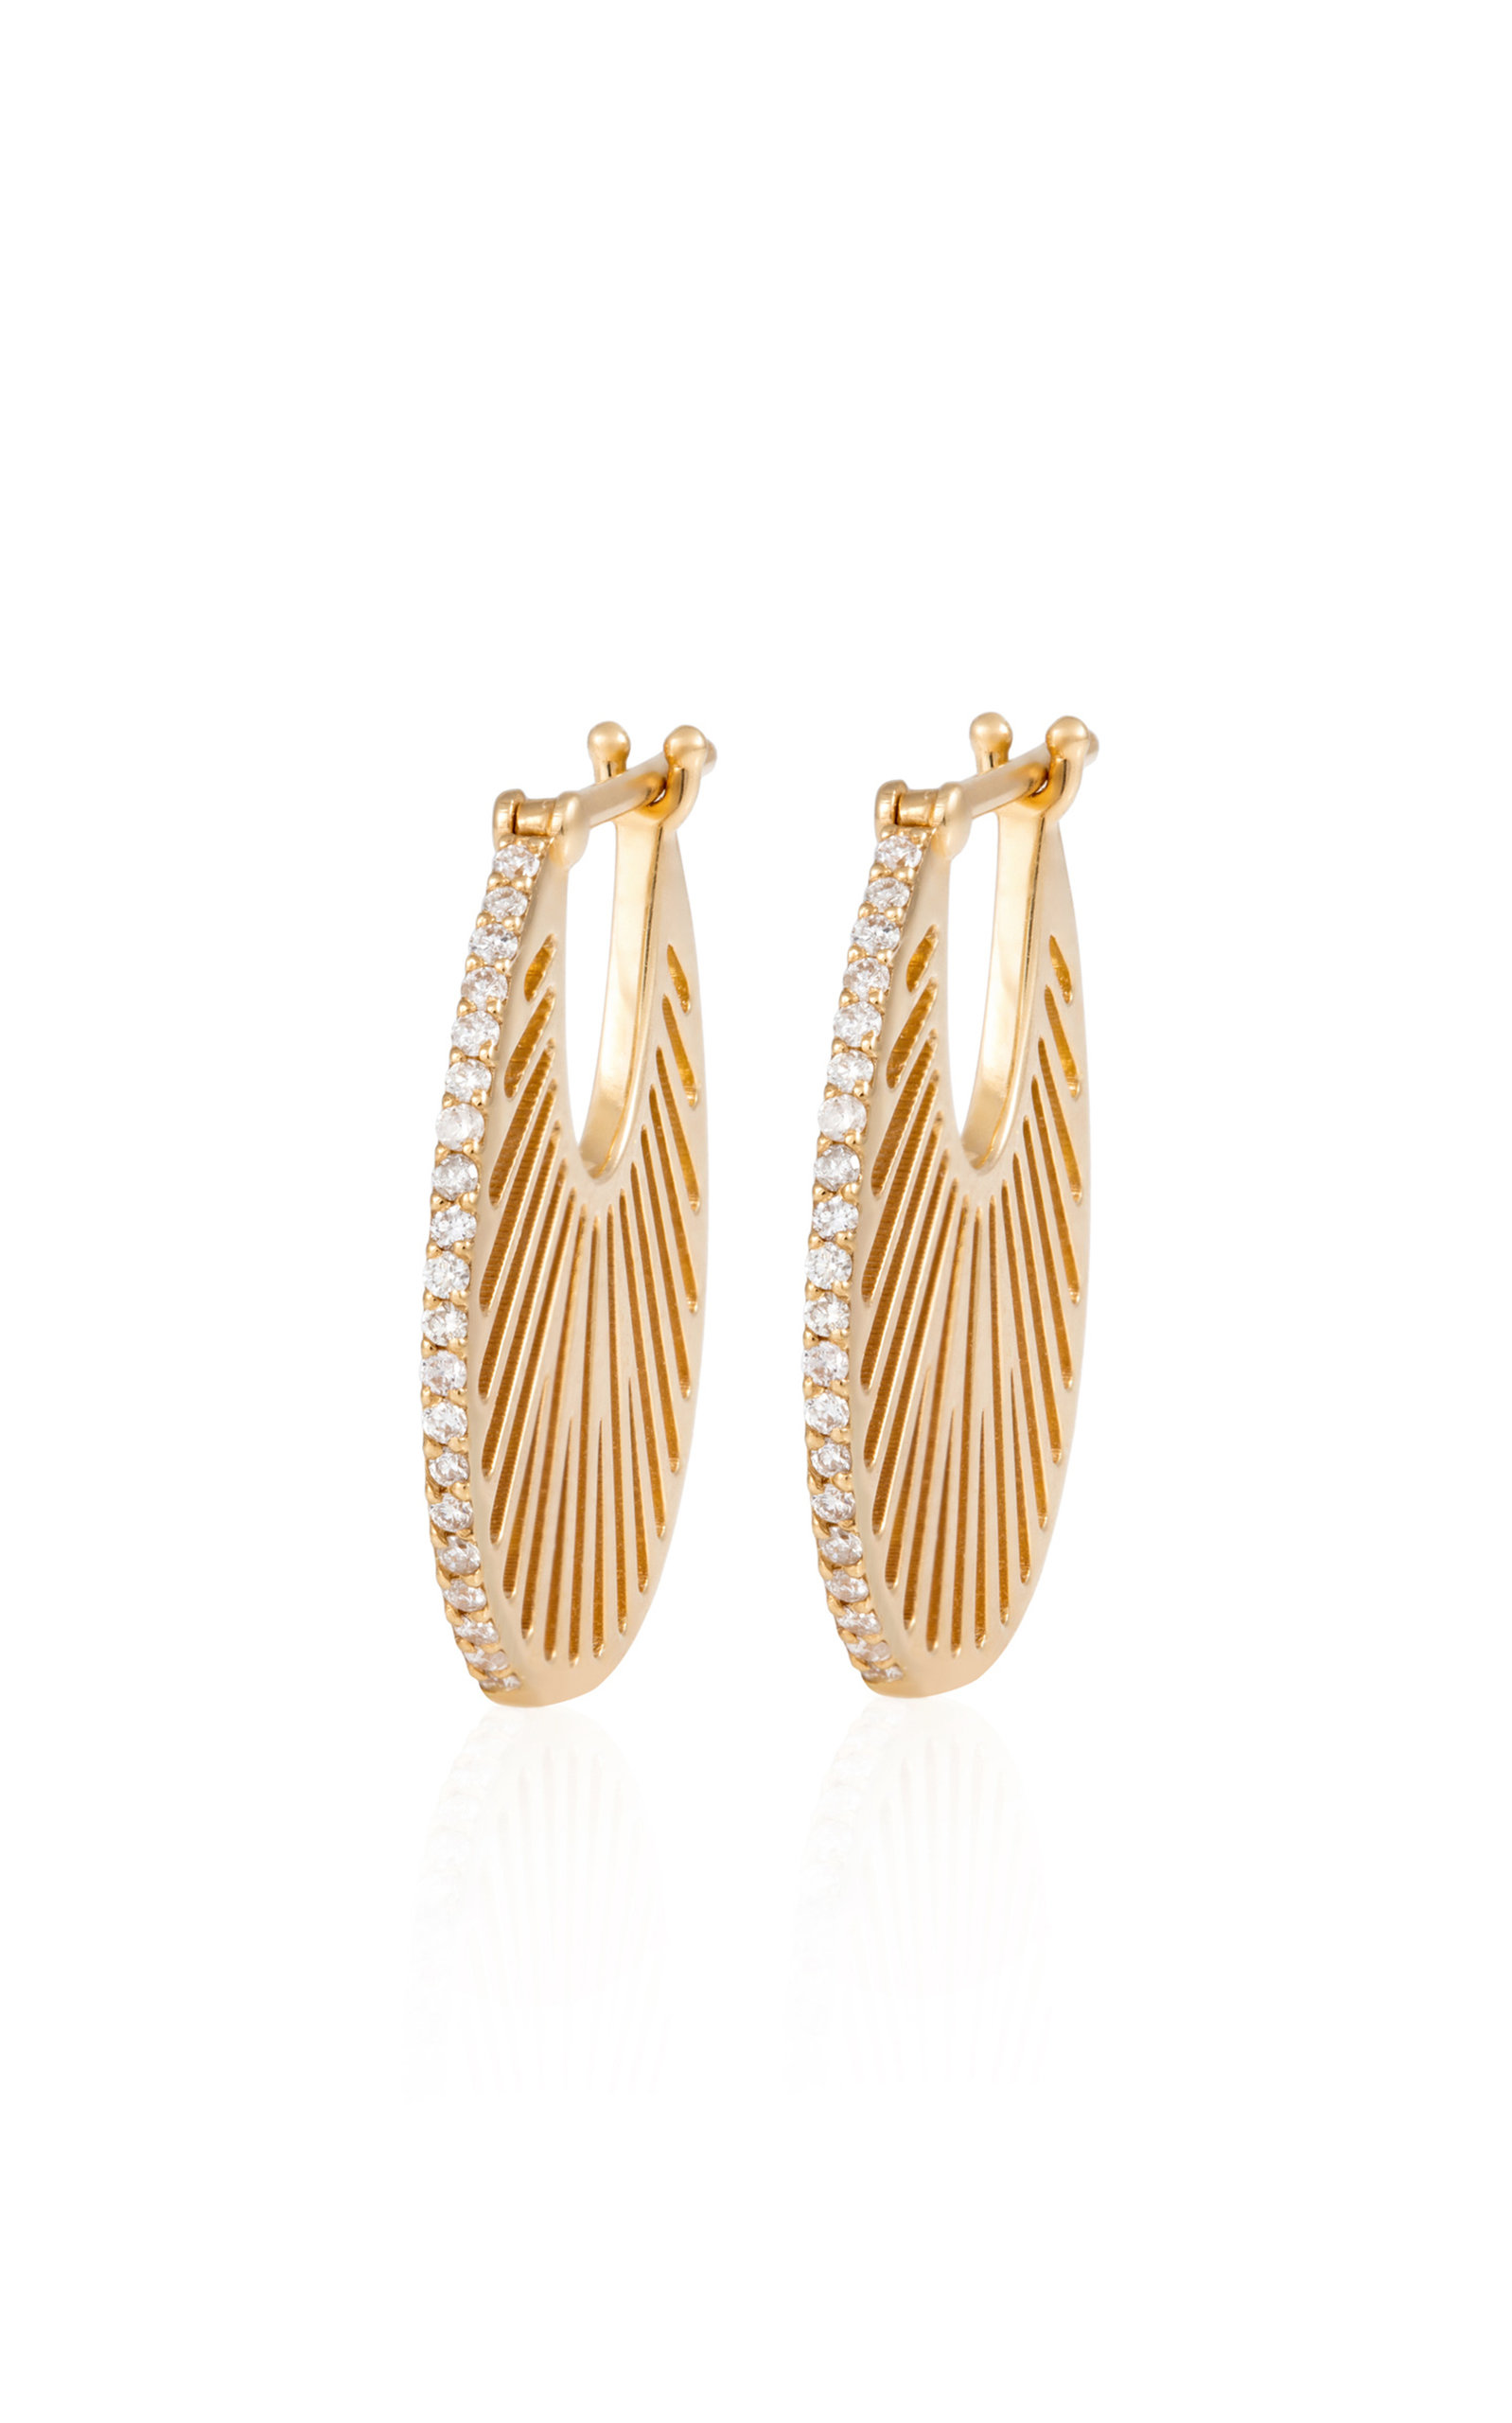 L'Atelier Nawbar Women's Flat Ray 18K Yellow Gold Diamond Hoop Earrings